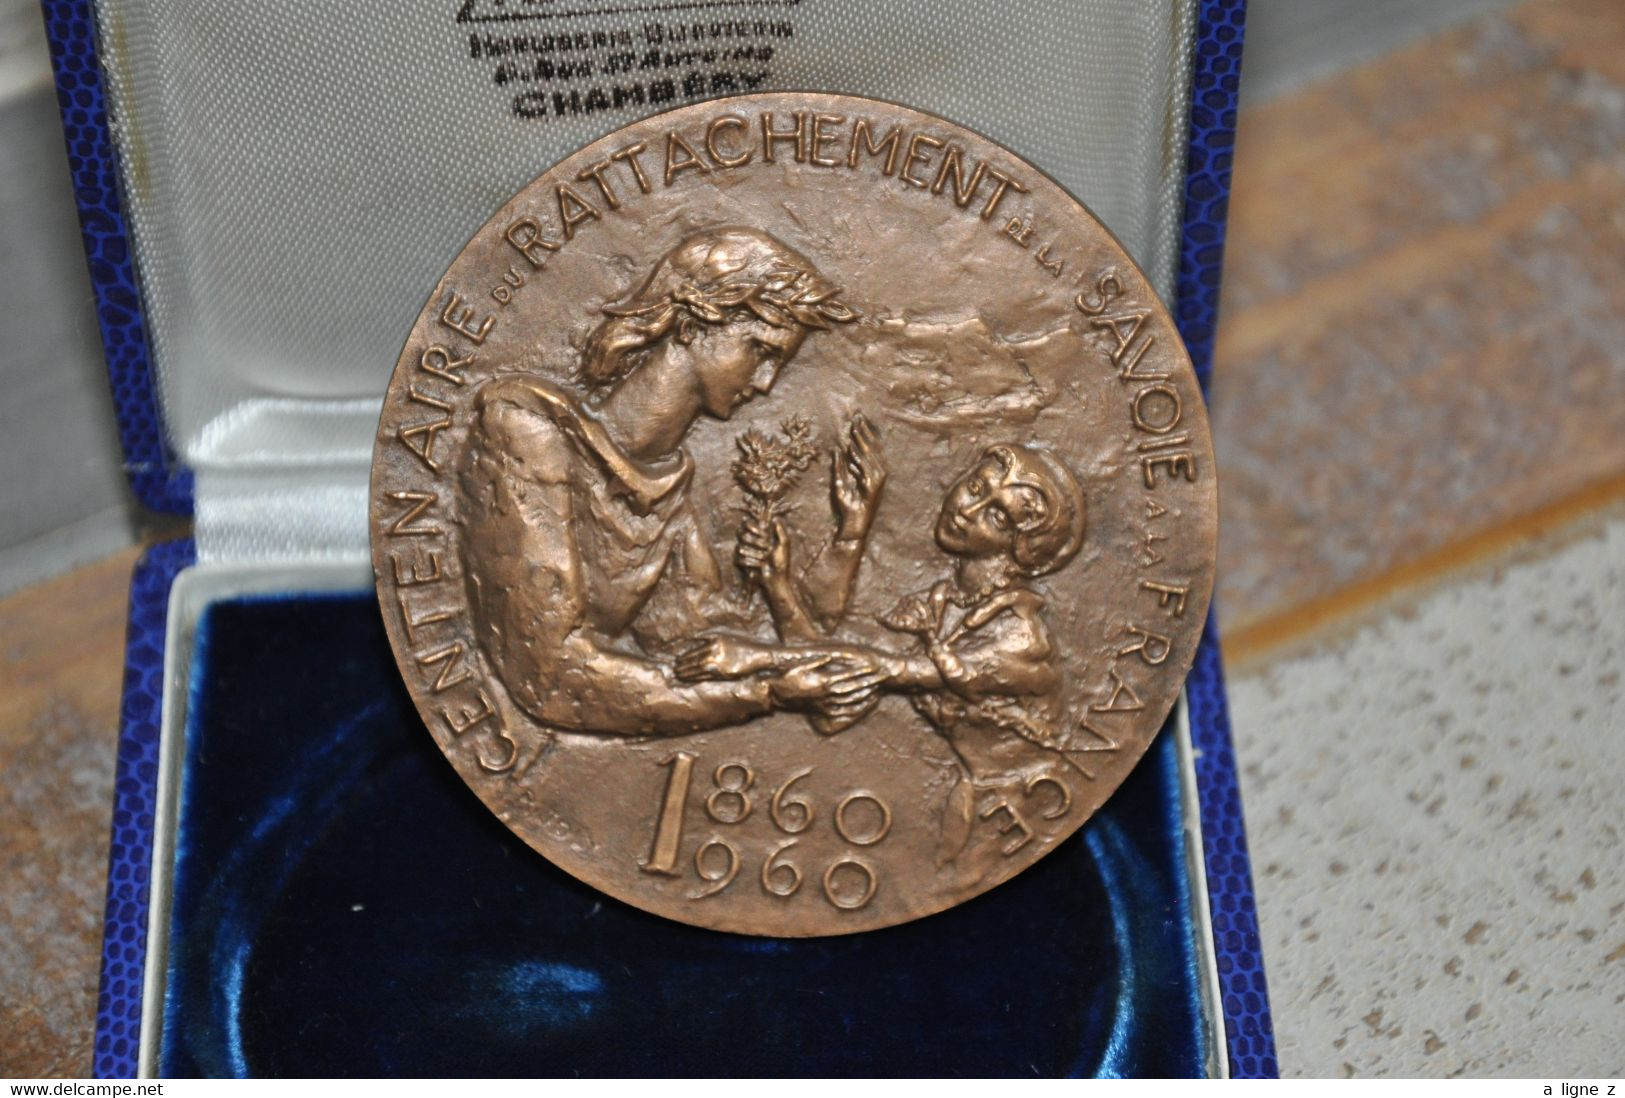 Ref TMB (kdk) : Médaille Bronze Centenaire Du Rattachement De Nice à La France 1960 Diametre 65 Mm Avec écrin Chambery - Professionnels / De Société